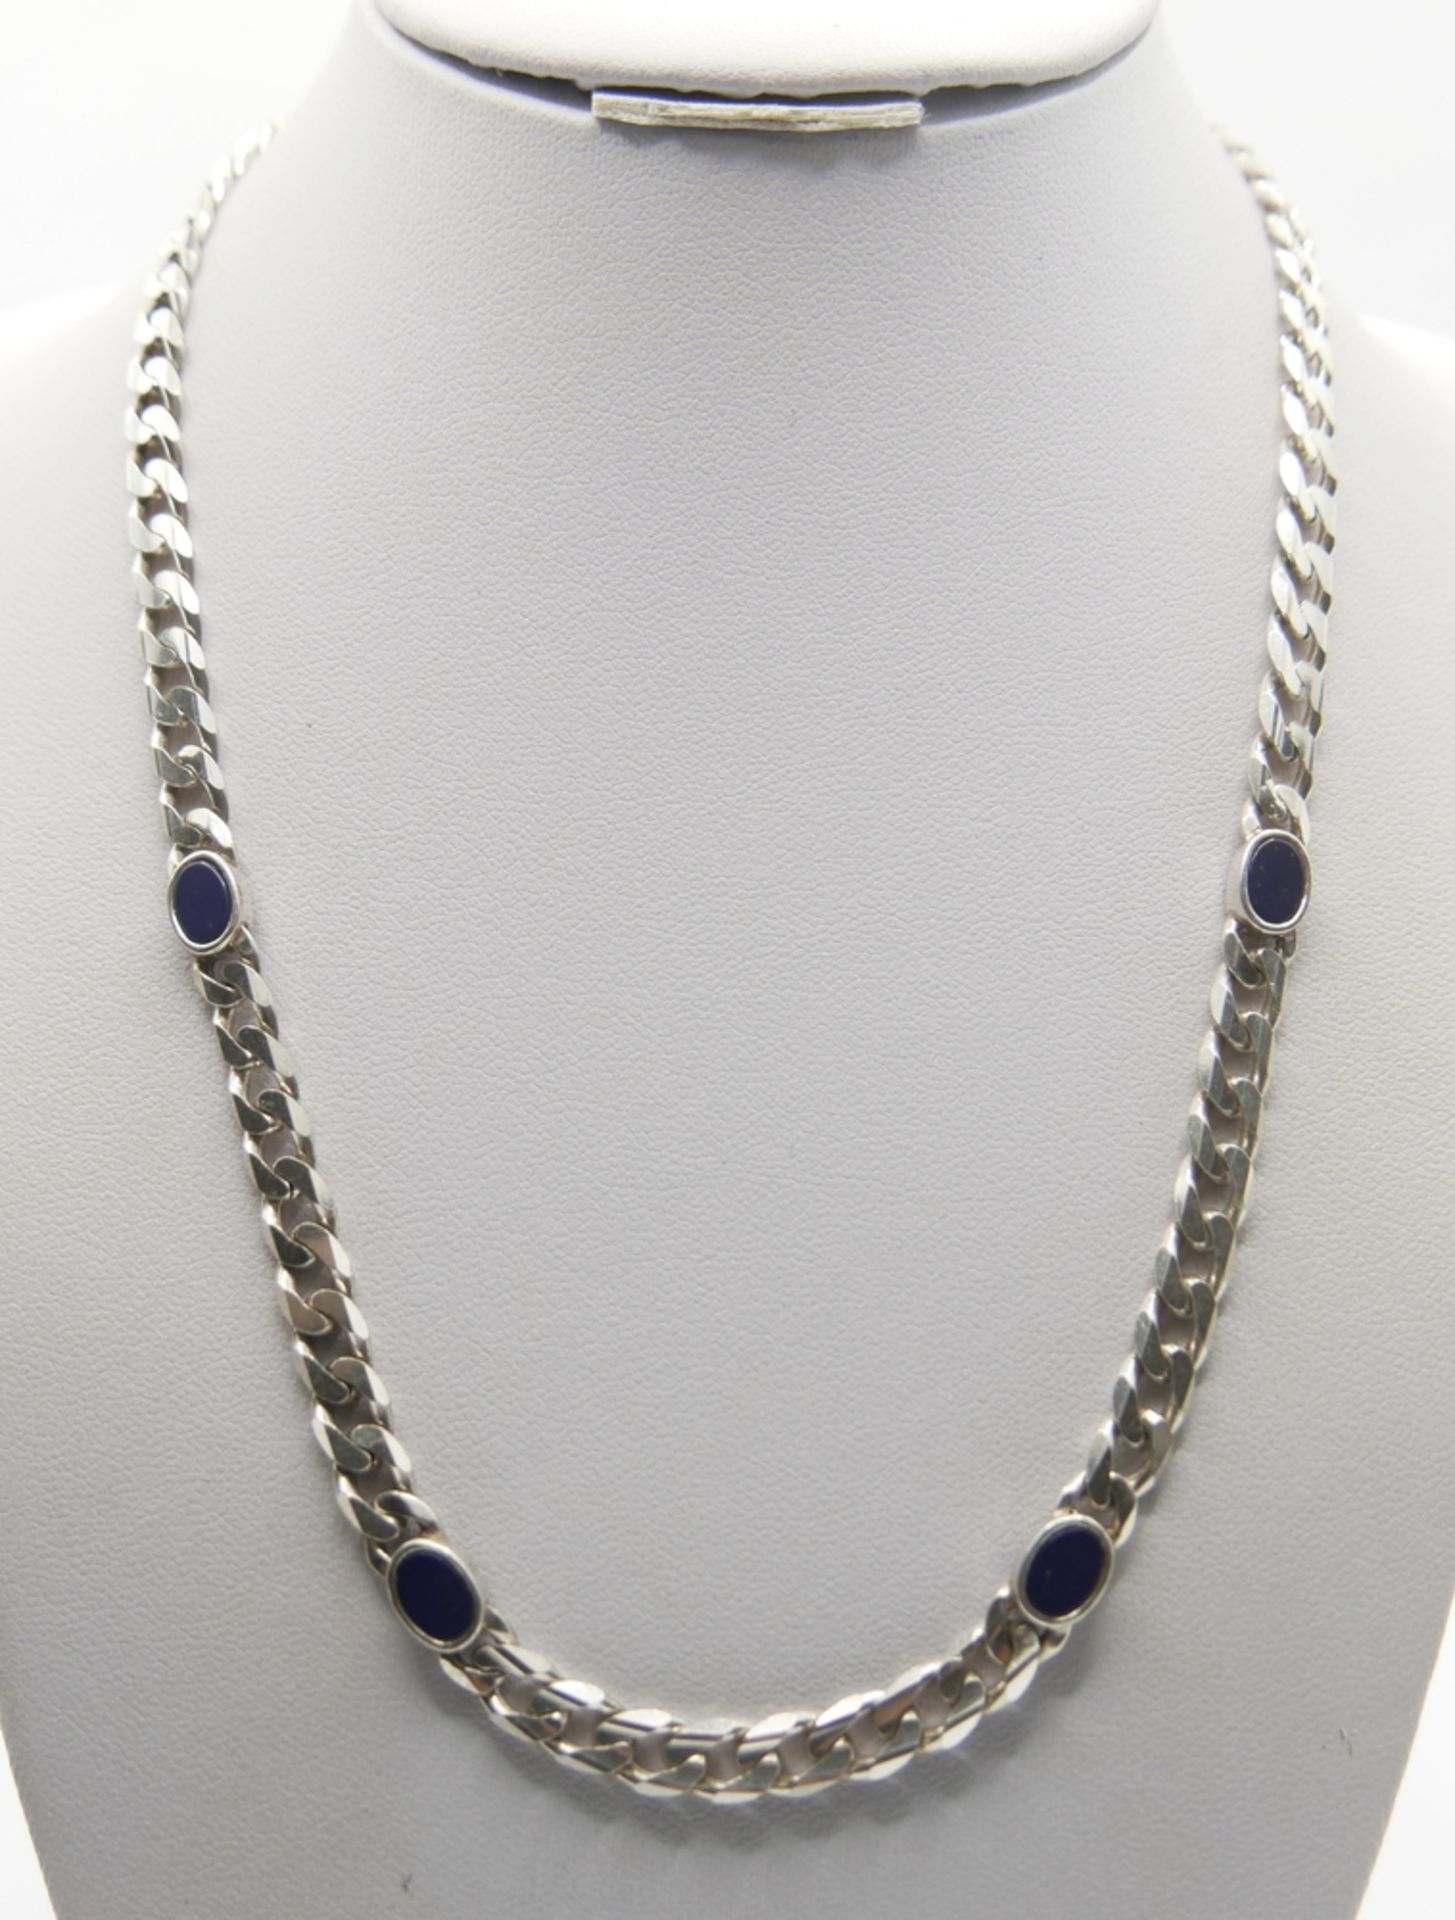 925er Silberkette mit 4 blauen Steinen. Länge ca. 45 cm